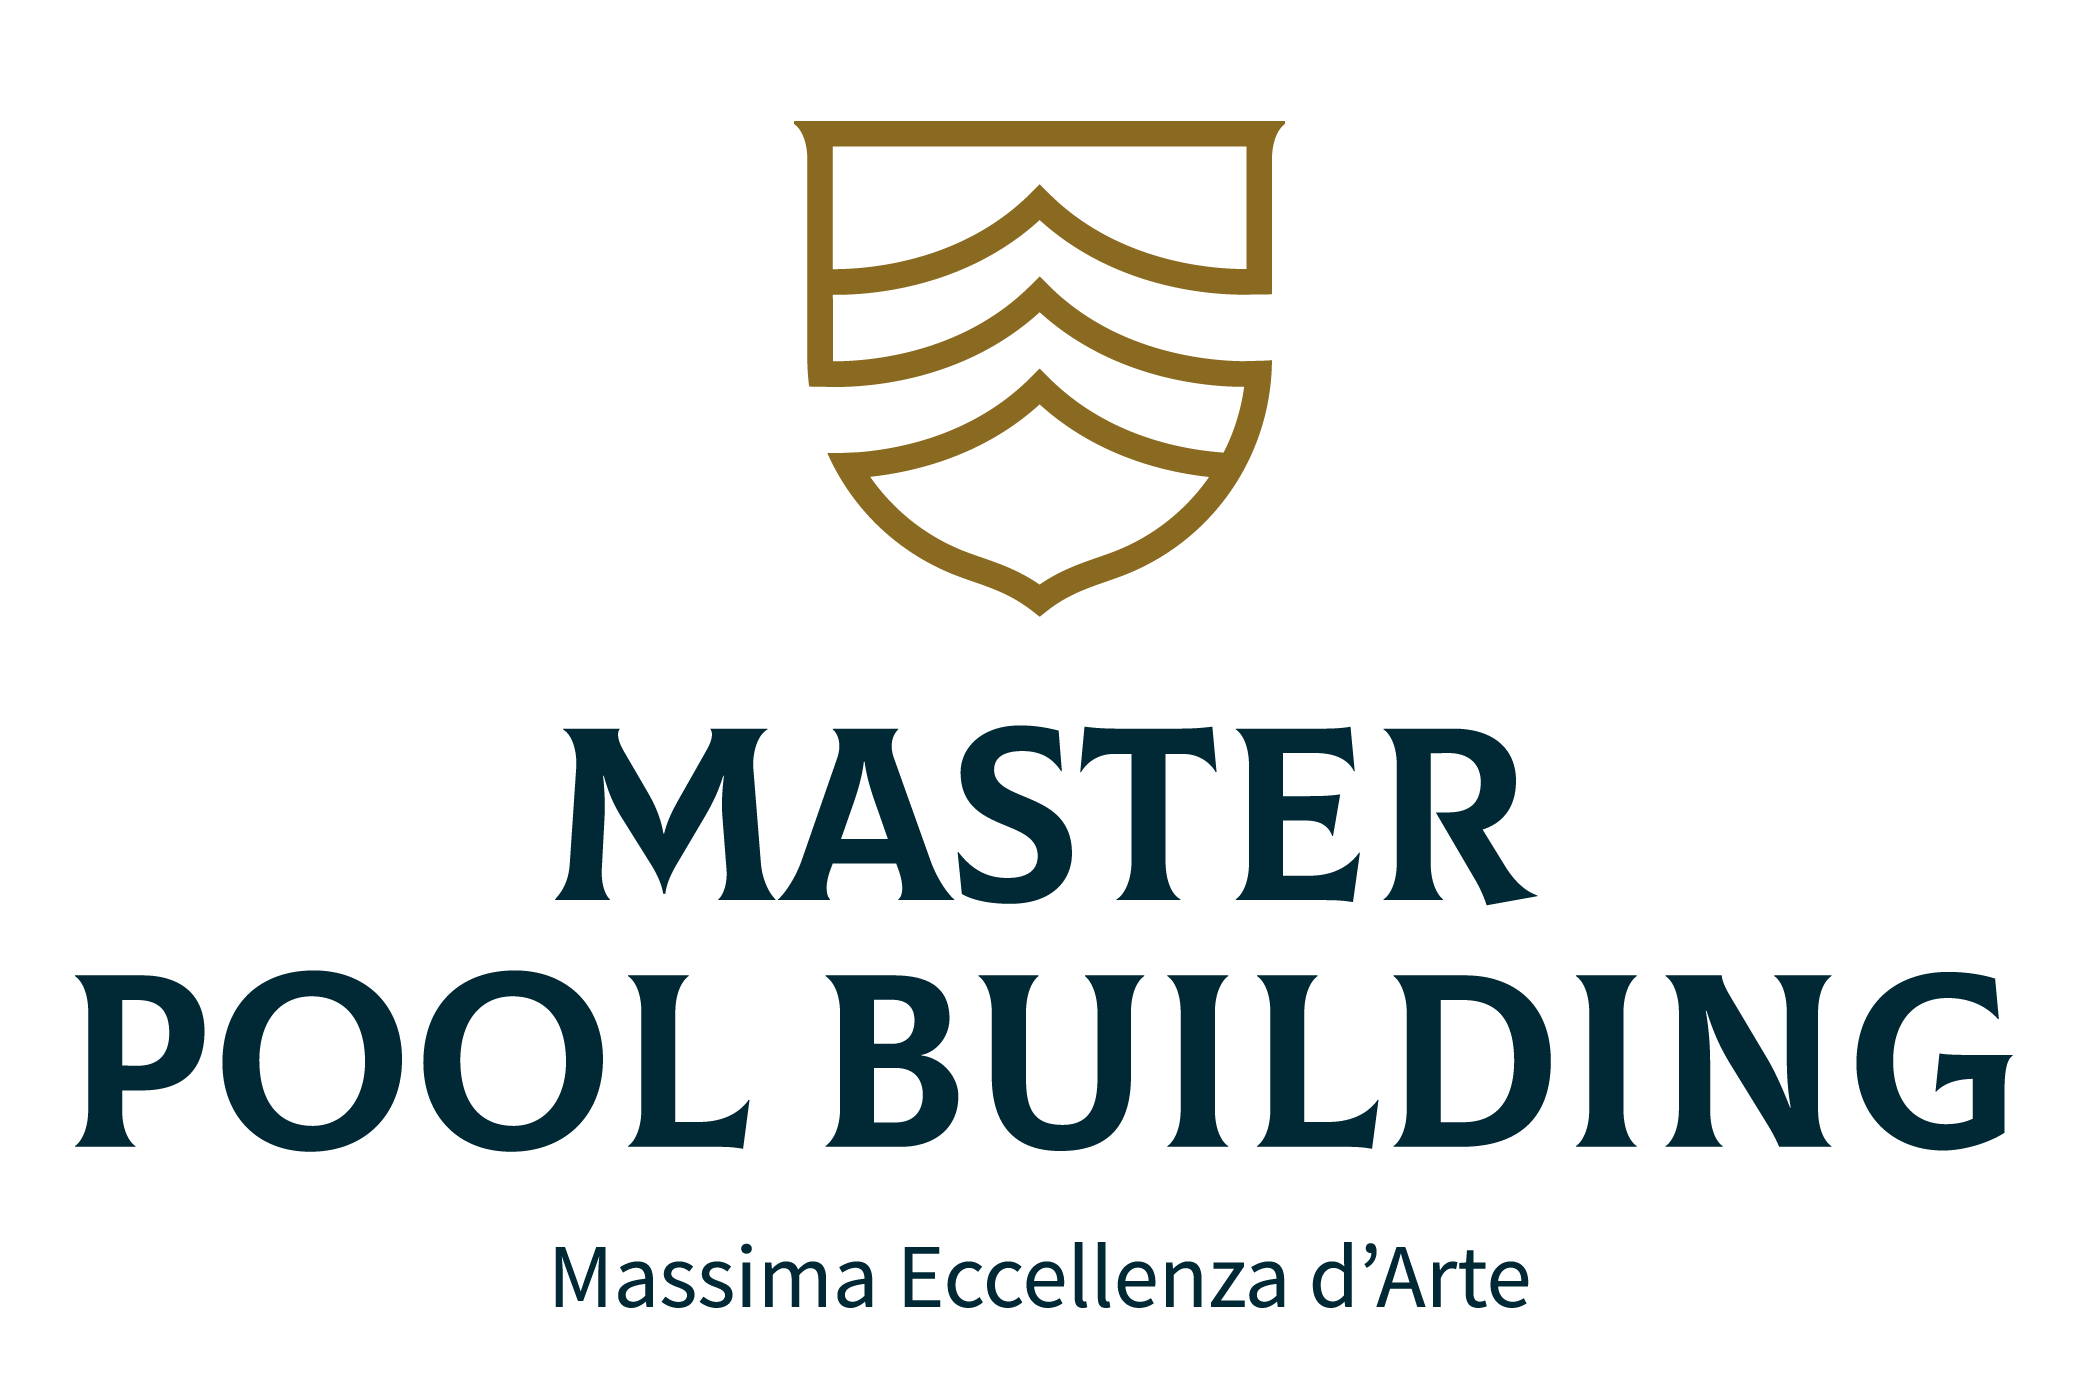 I tuoi corsi formativi validi per la formazione continua dei Master Pool Building